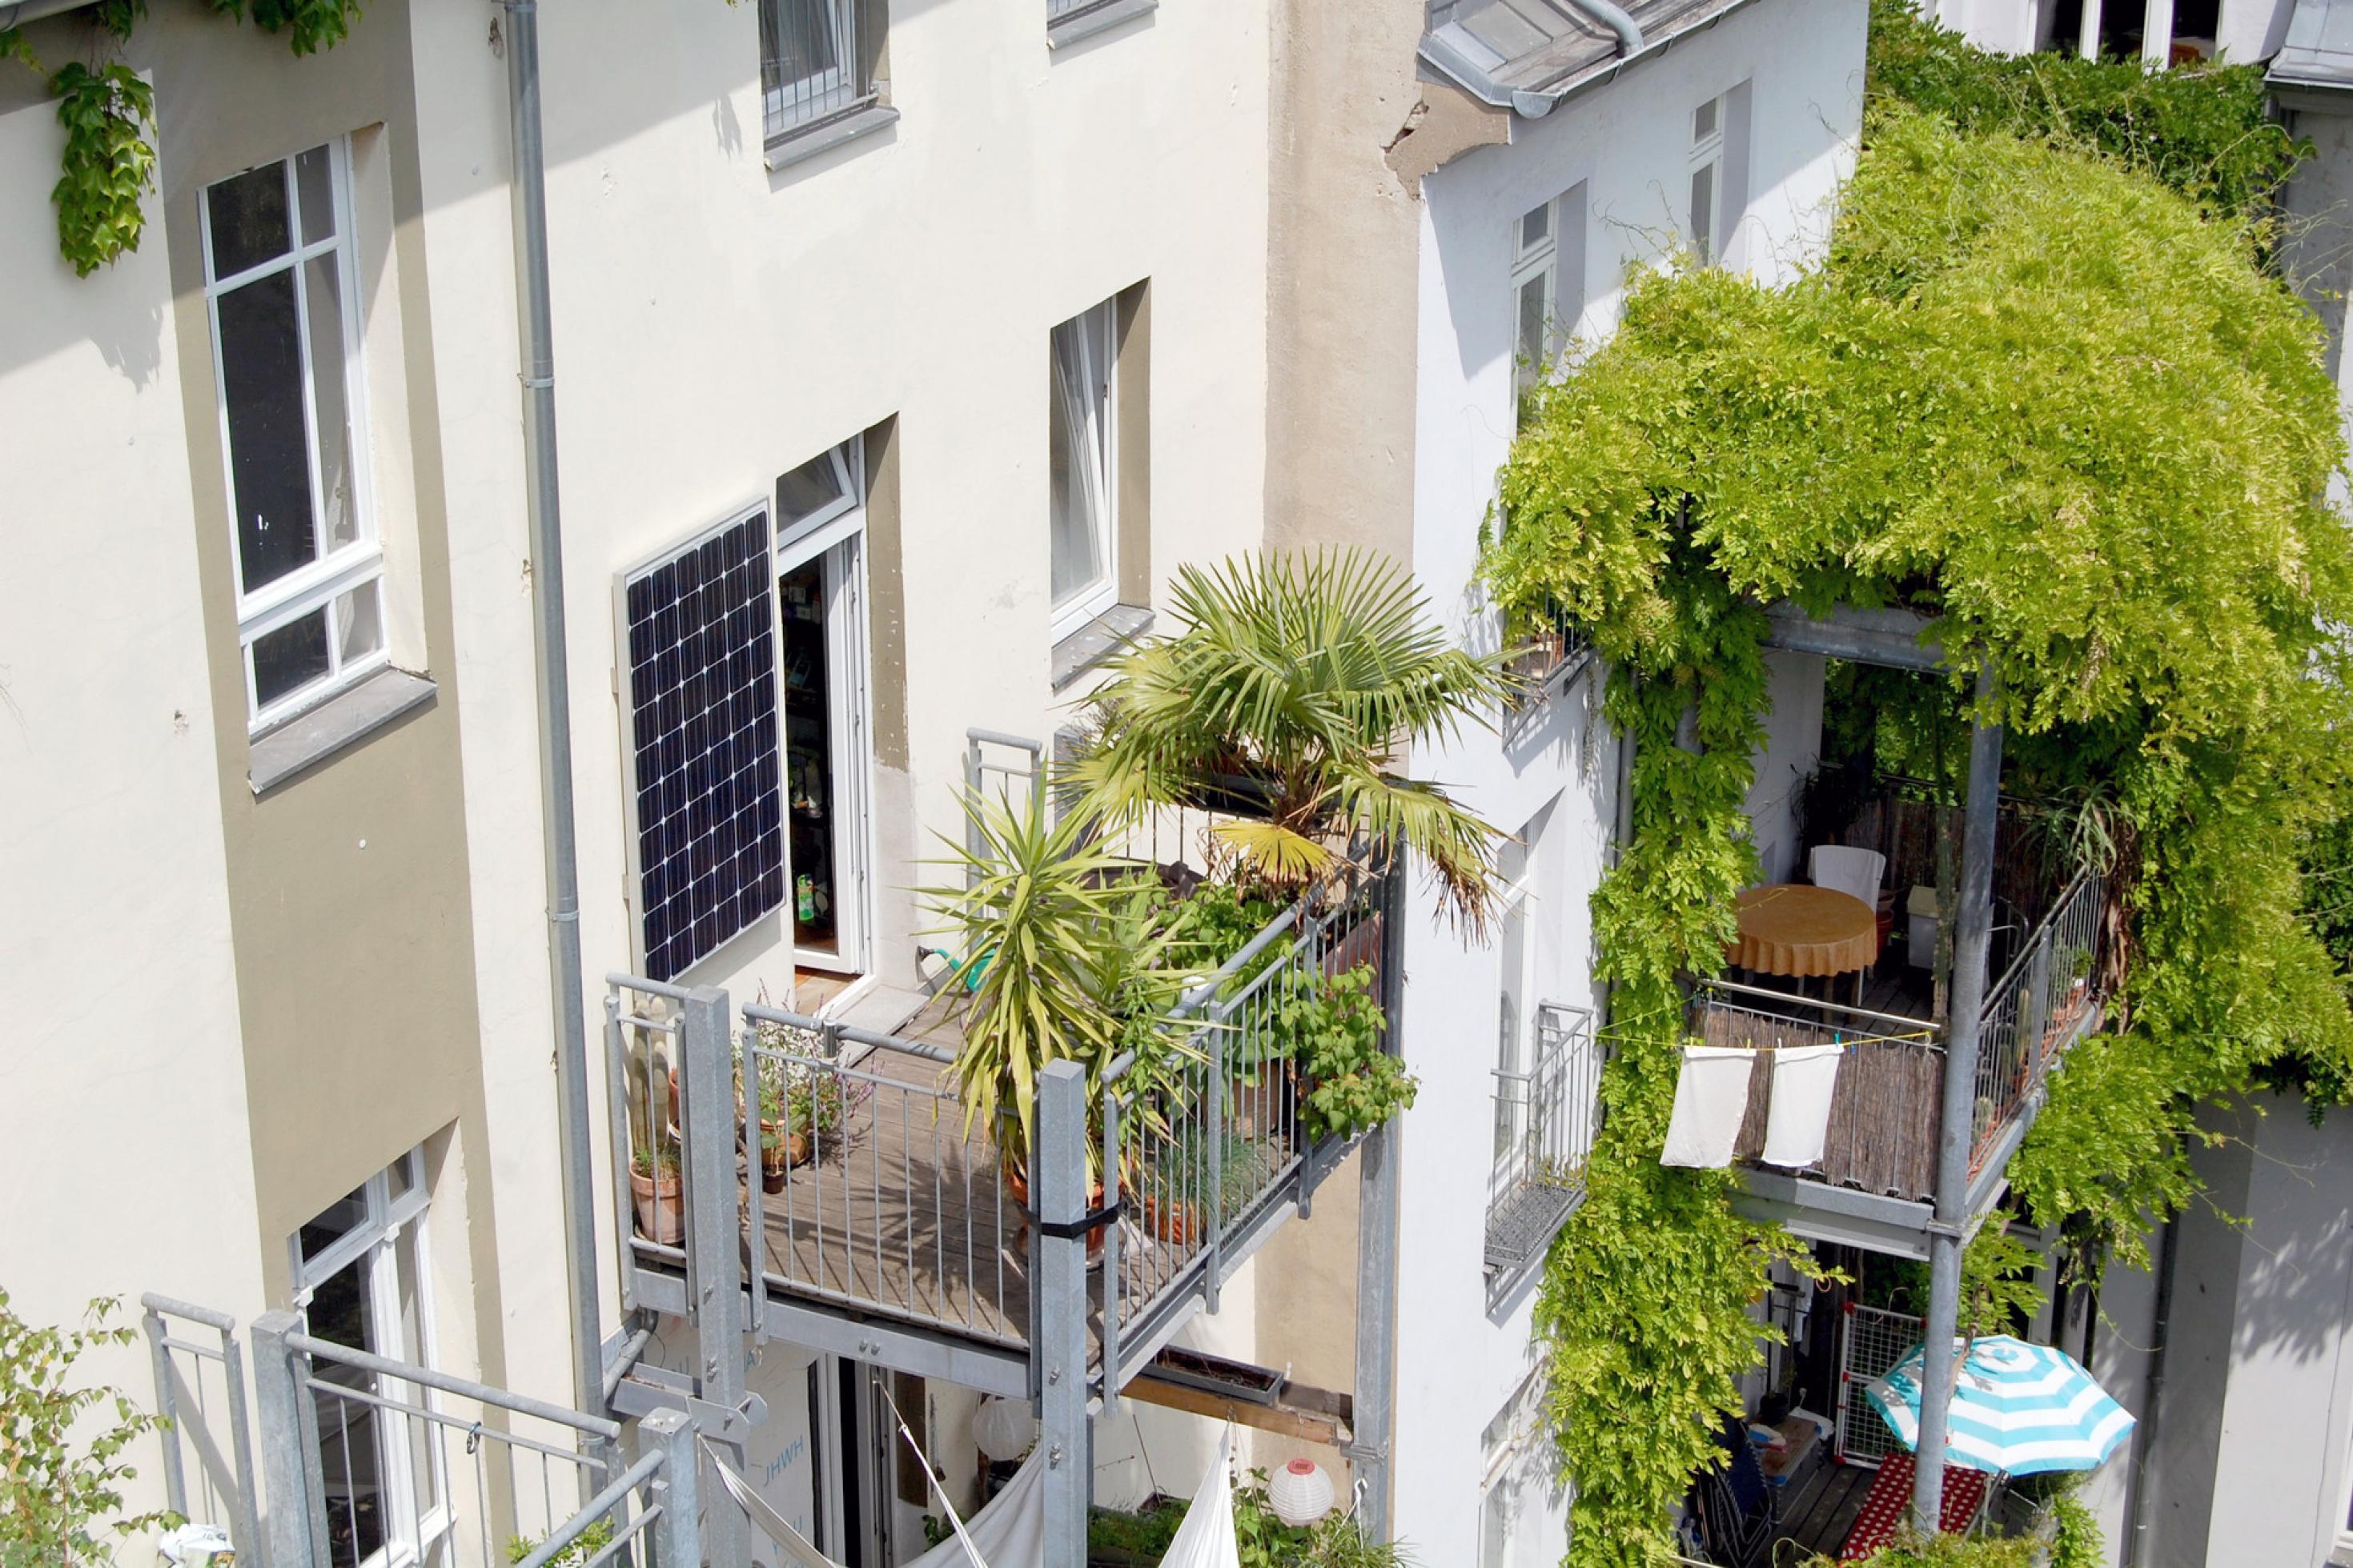 Das Bild zeigt ein Stecker-Solarmodul auf einem Balkon.